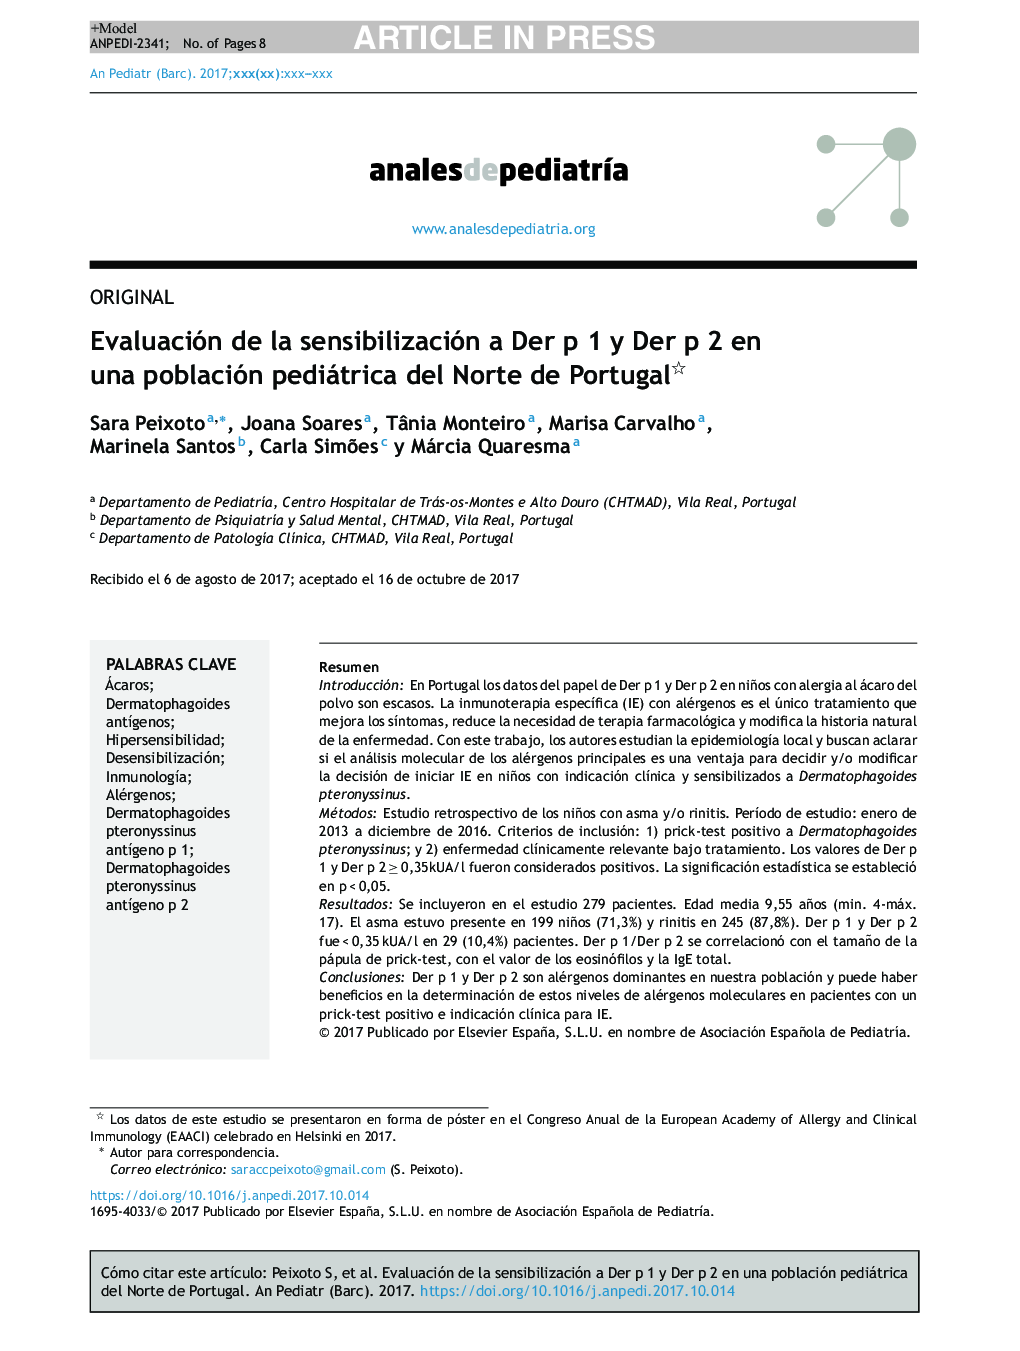 Evaluación de la sensibilización a Der p 1 y Der p 2 en una población pediátrica del Norte de Portugal